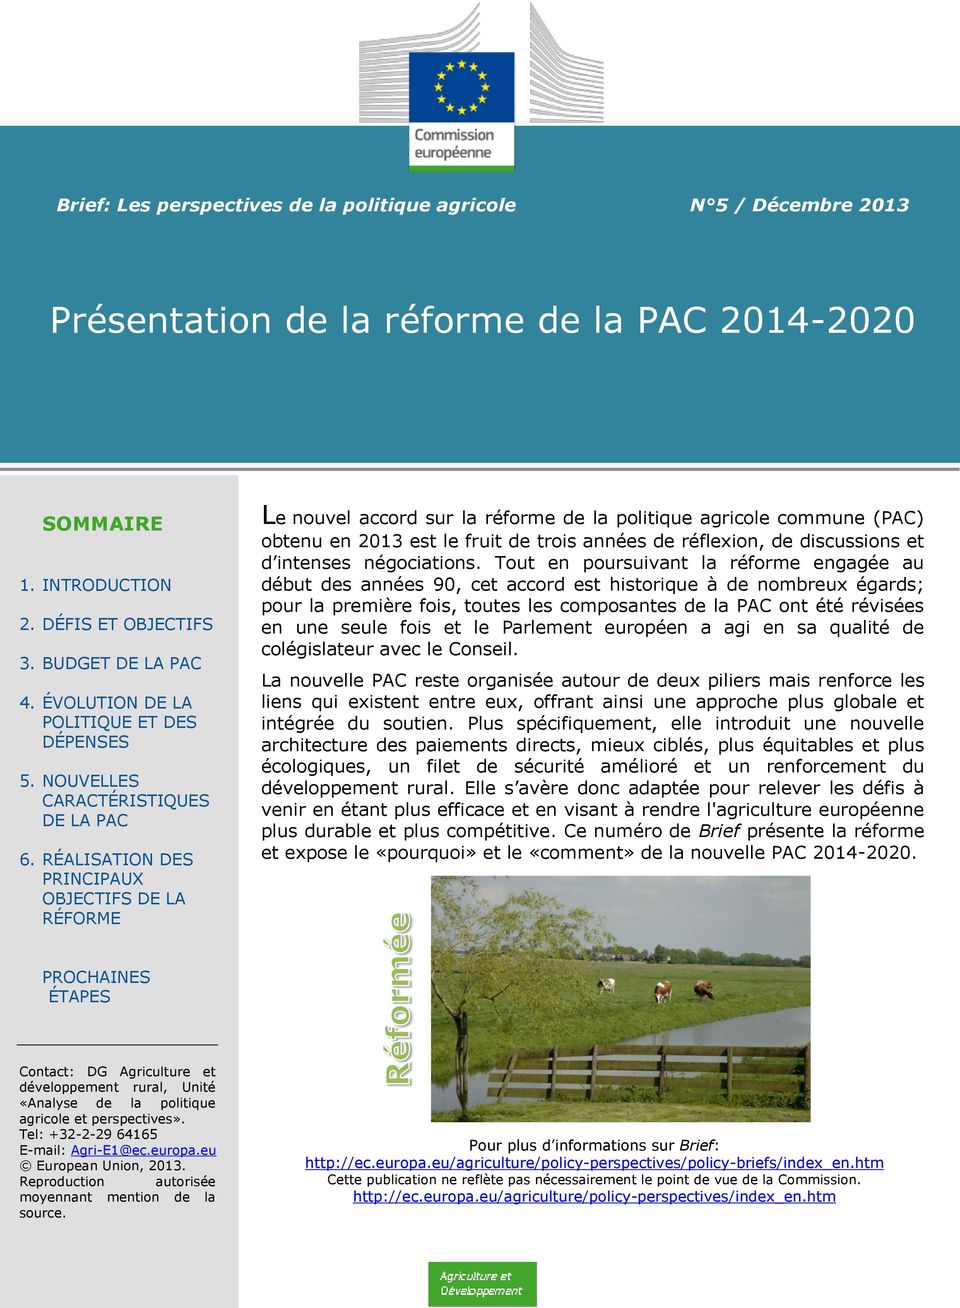 RÉALISATION DES PRINCIPAUX OBJECTIFS DE LA RÉFORME Le nouvel accord sur la réforme de la politique agricole commune (PAC) obtenu en 2013 est le fruit de trois années de réflexion, de discussions et d